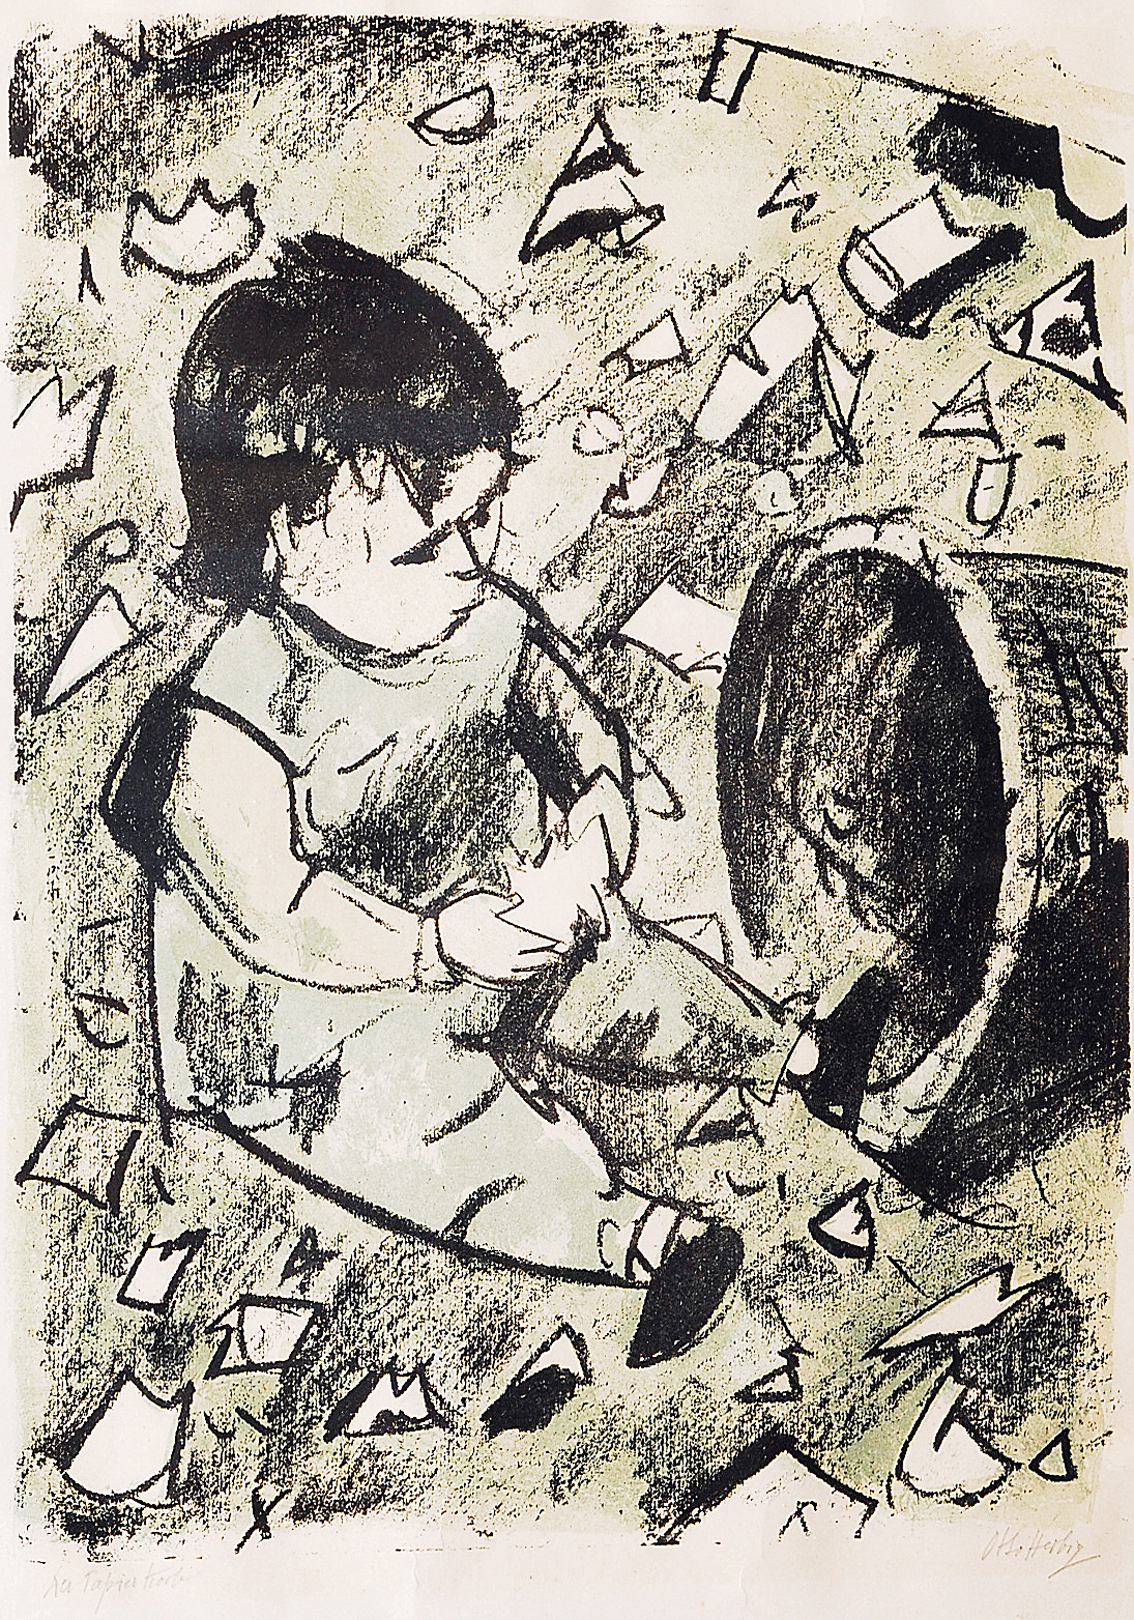 Spielendes Kind vor einem Papierkorb